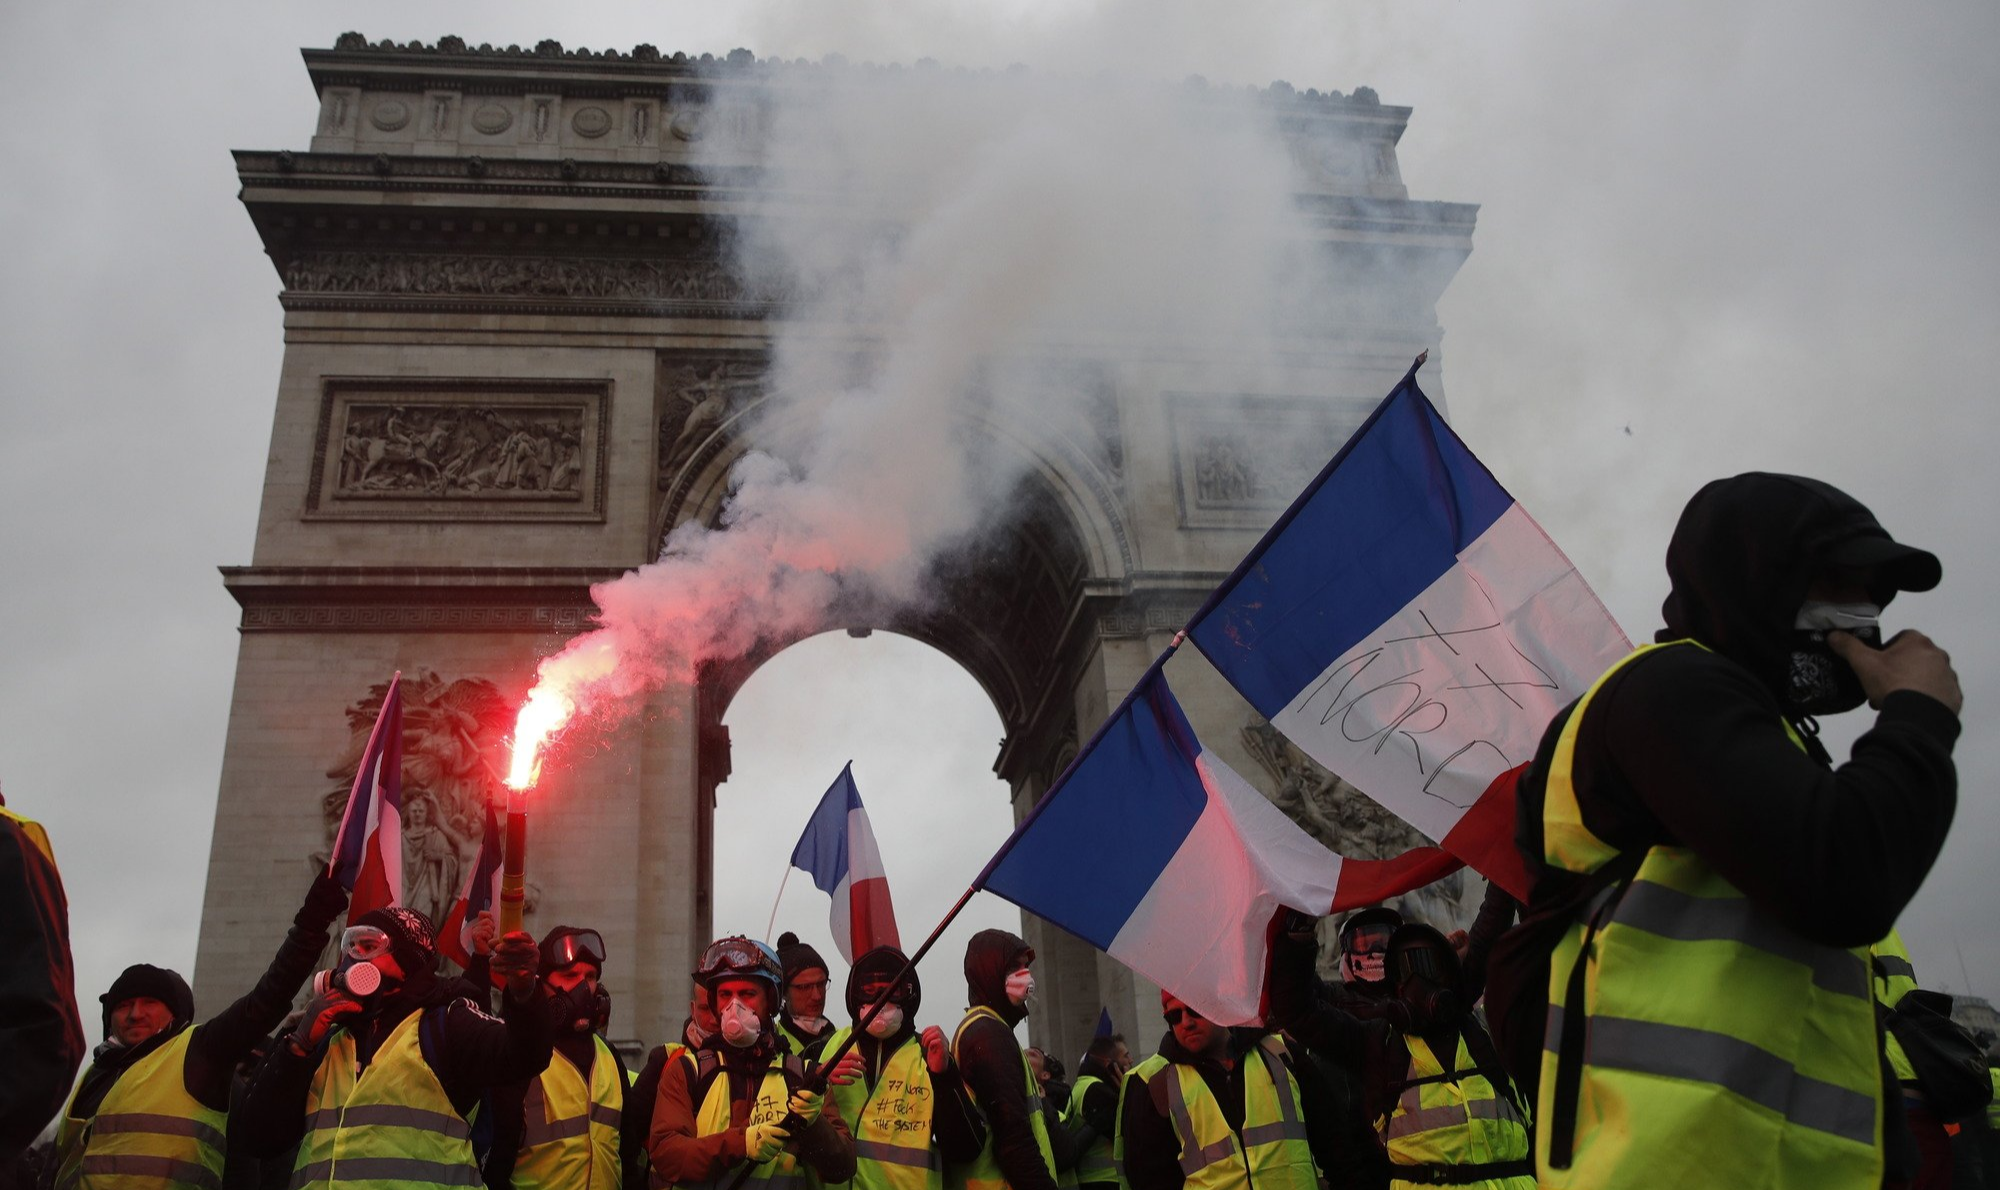 Violentos confrontos no centro da capital francesa marcaram mobilização; oposição acusa governo Macron de facilitar as ações de grupos extremistas